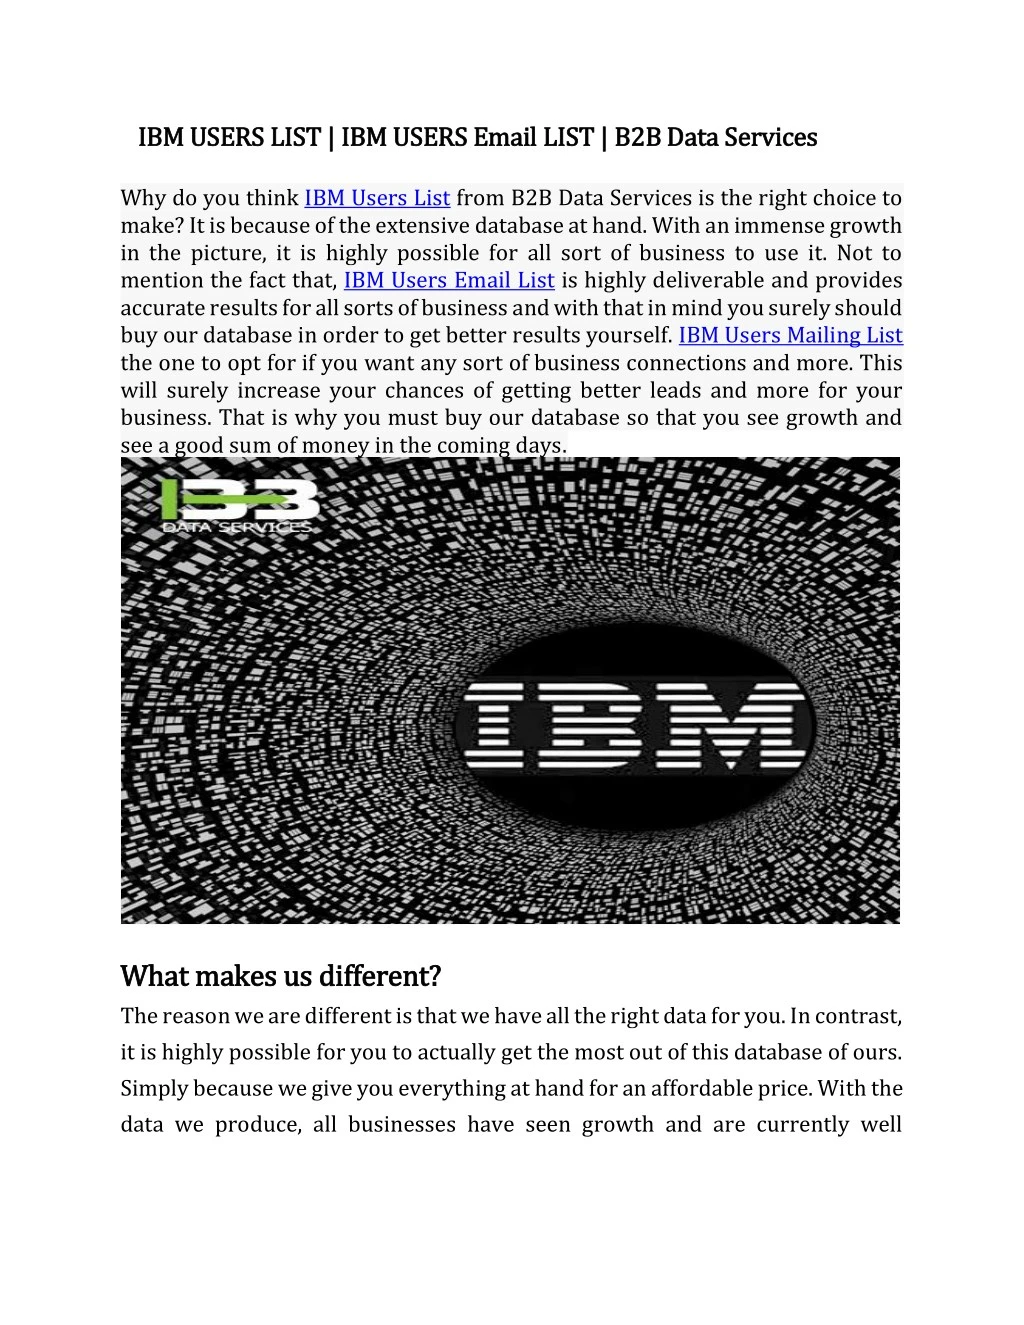 ibm users list ibm users email list ibm users